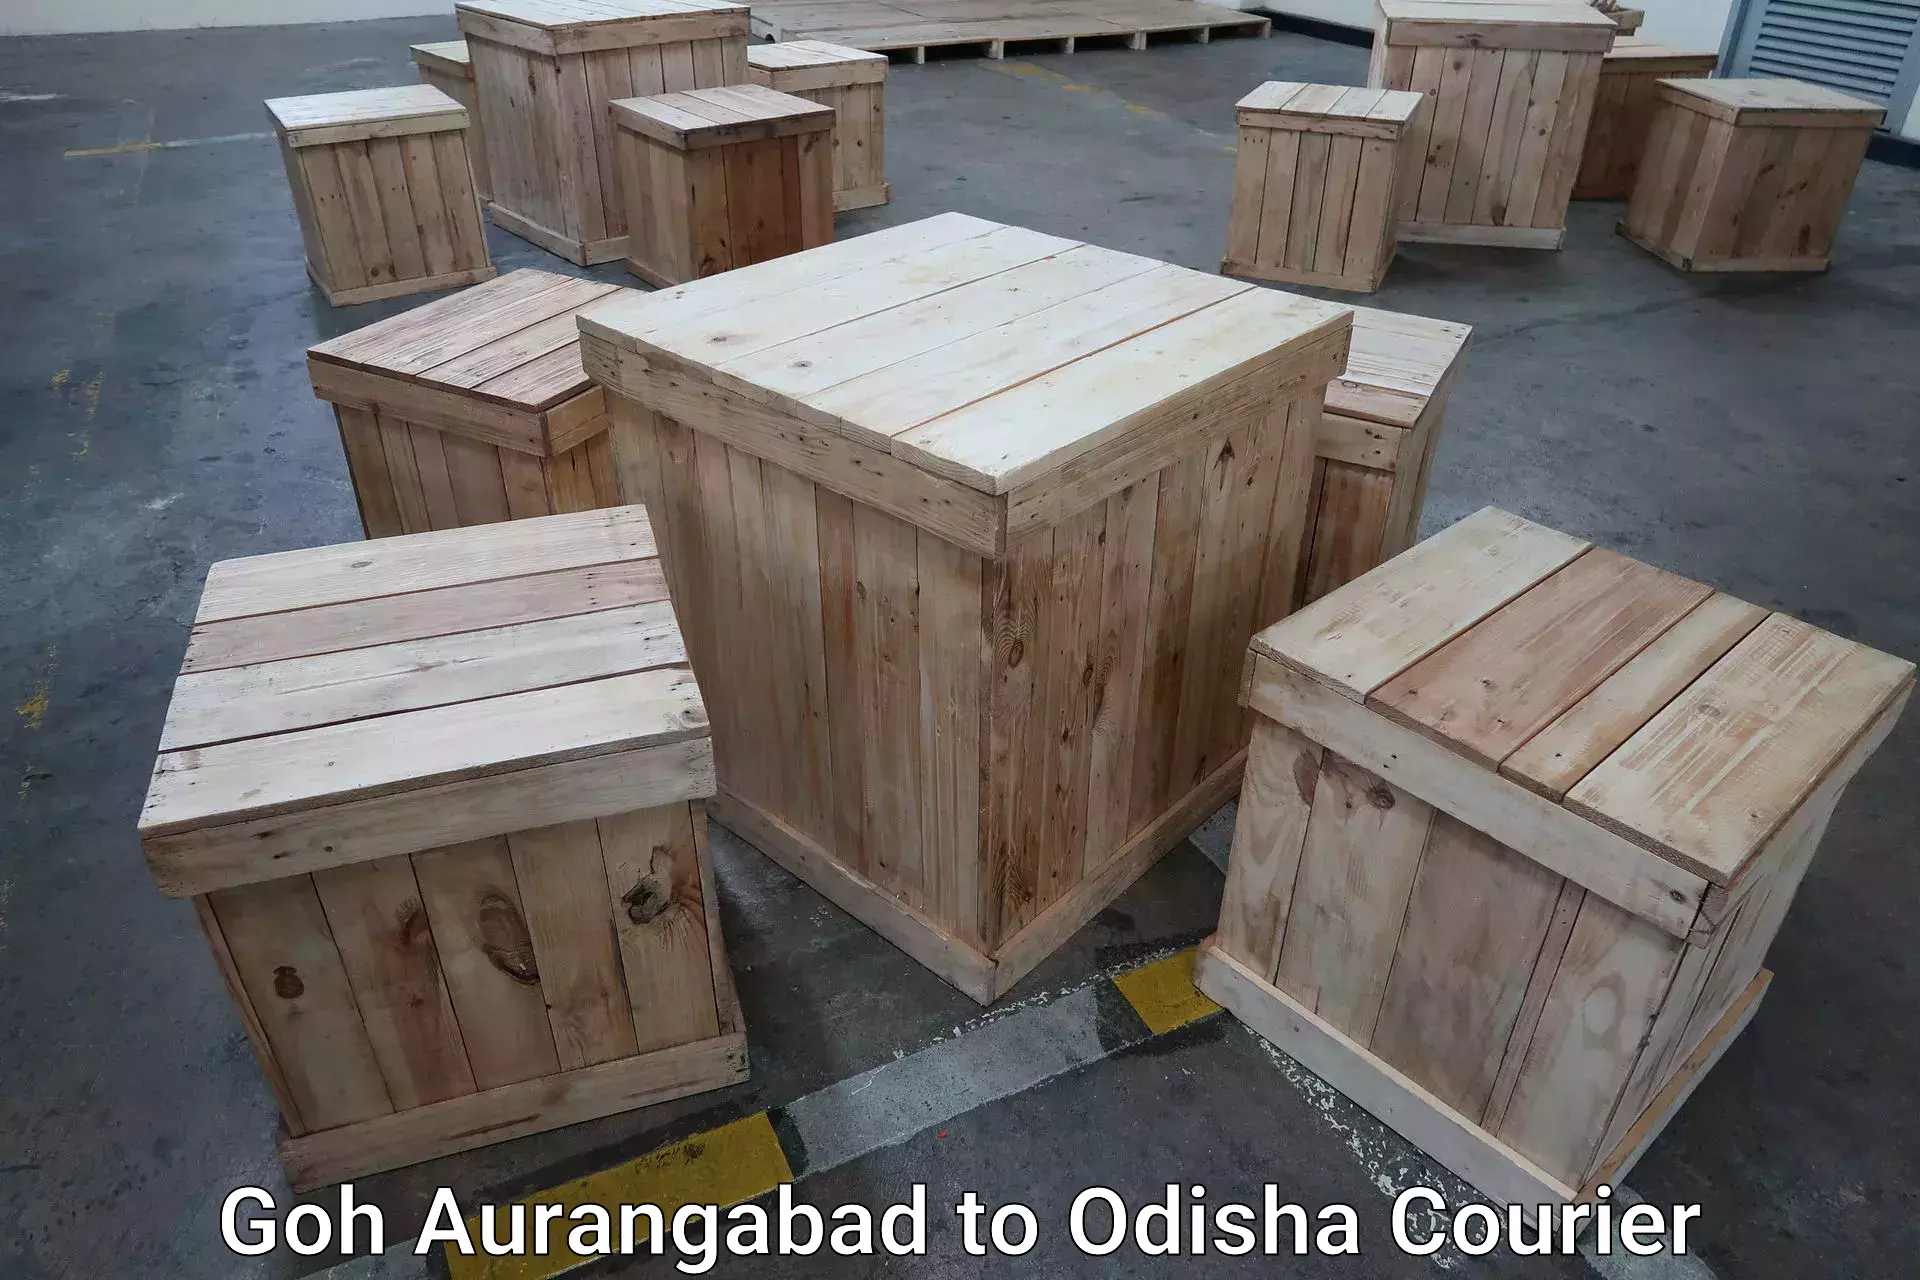 Luggage delivery estimate Goh Aurangabad to Jaraka